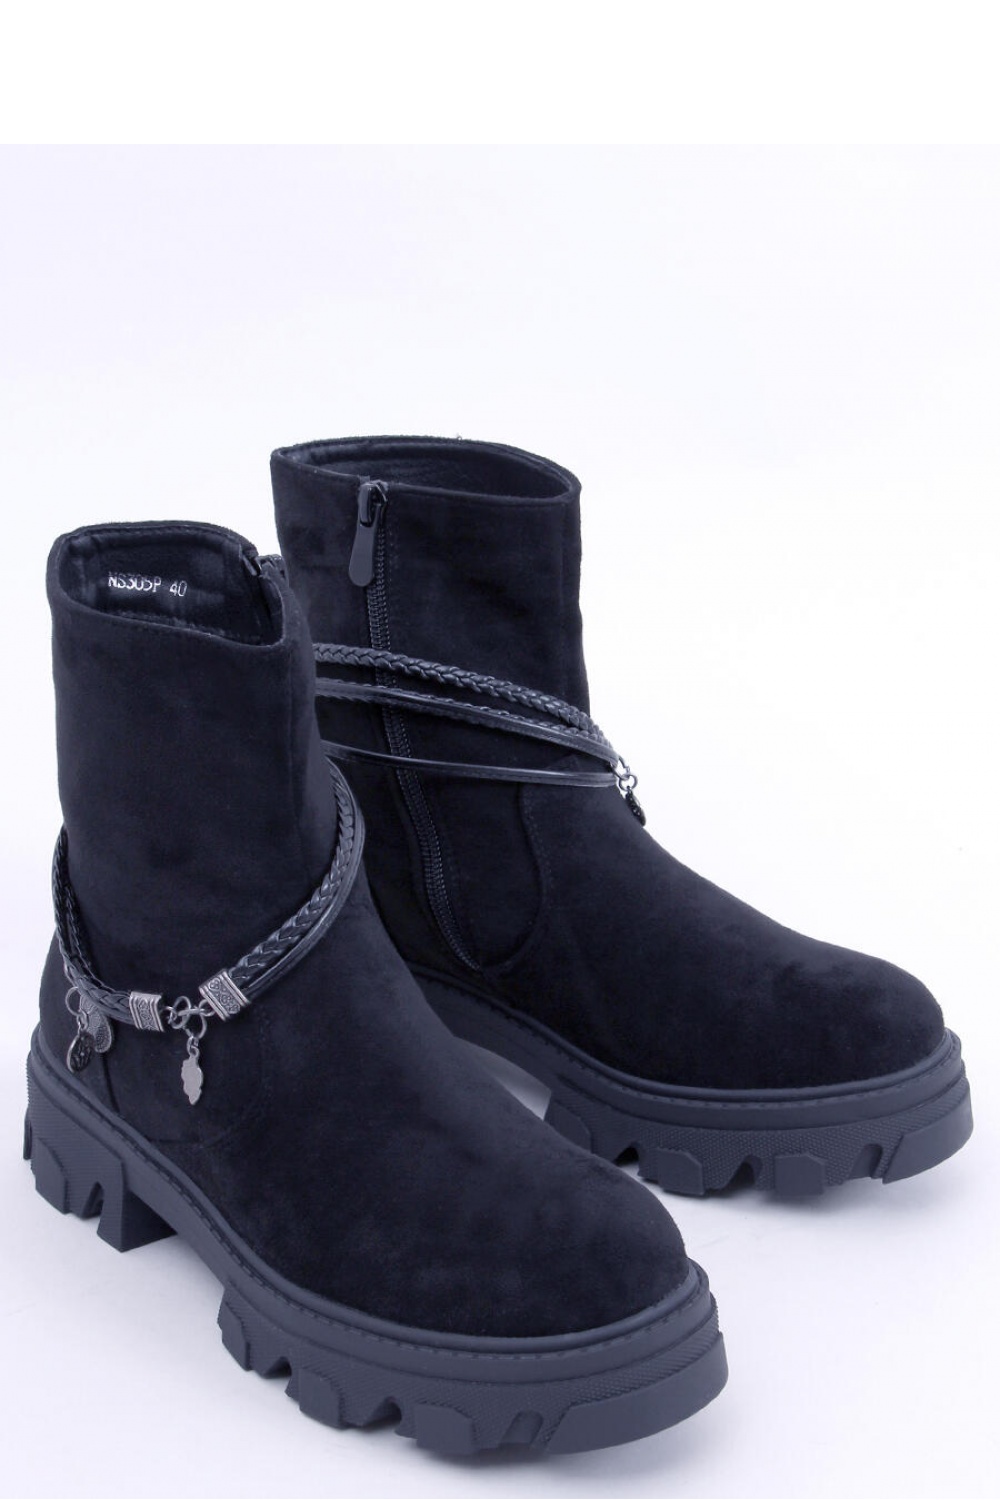  Boots model 171502 Inello  black